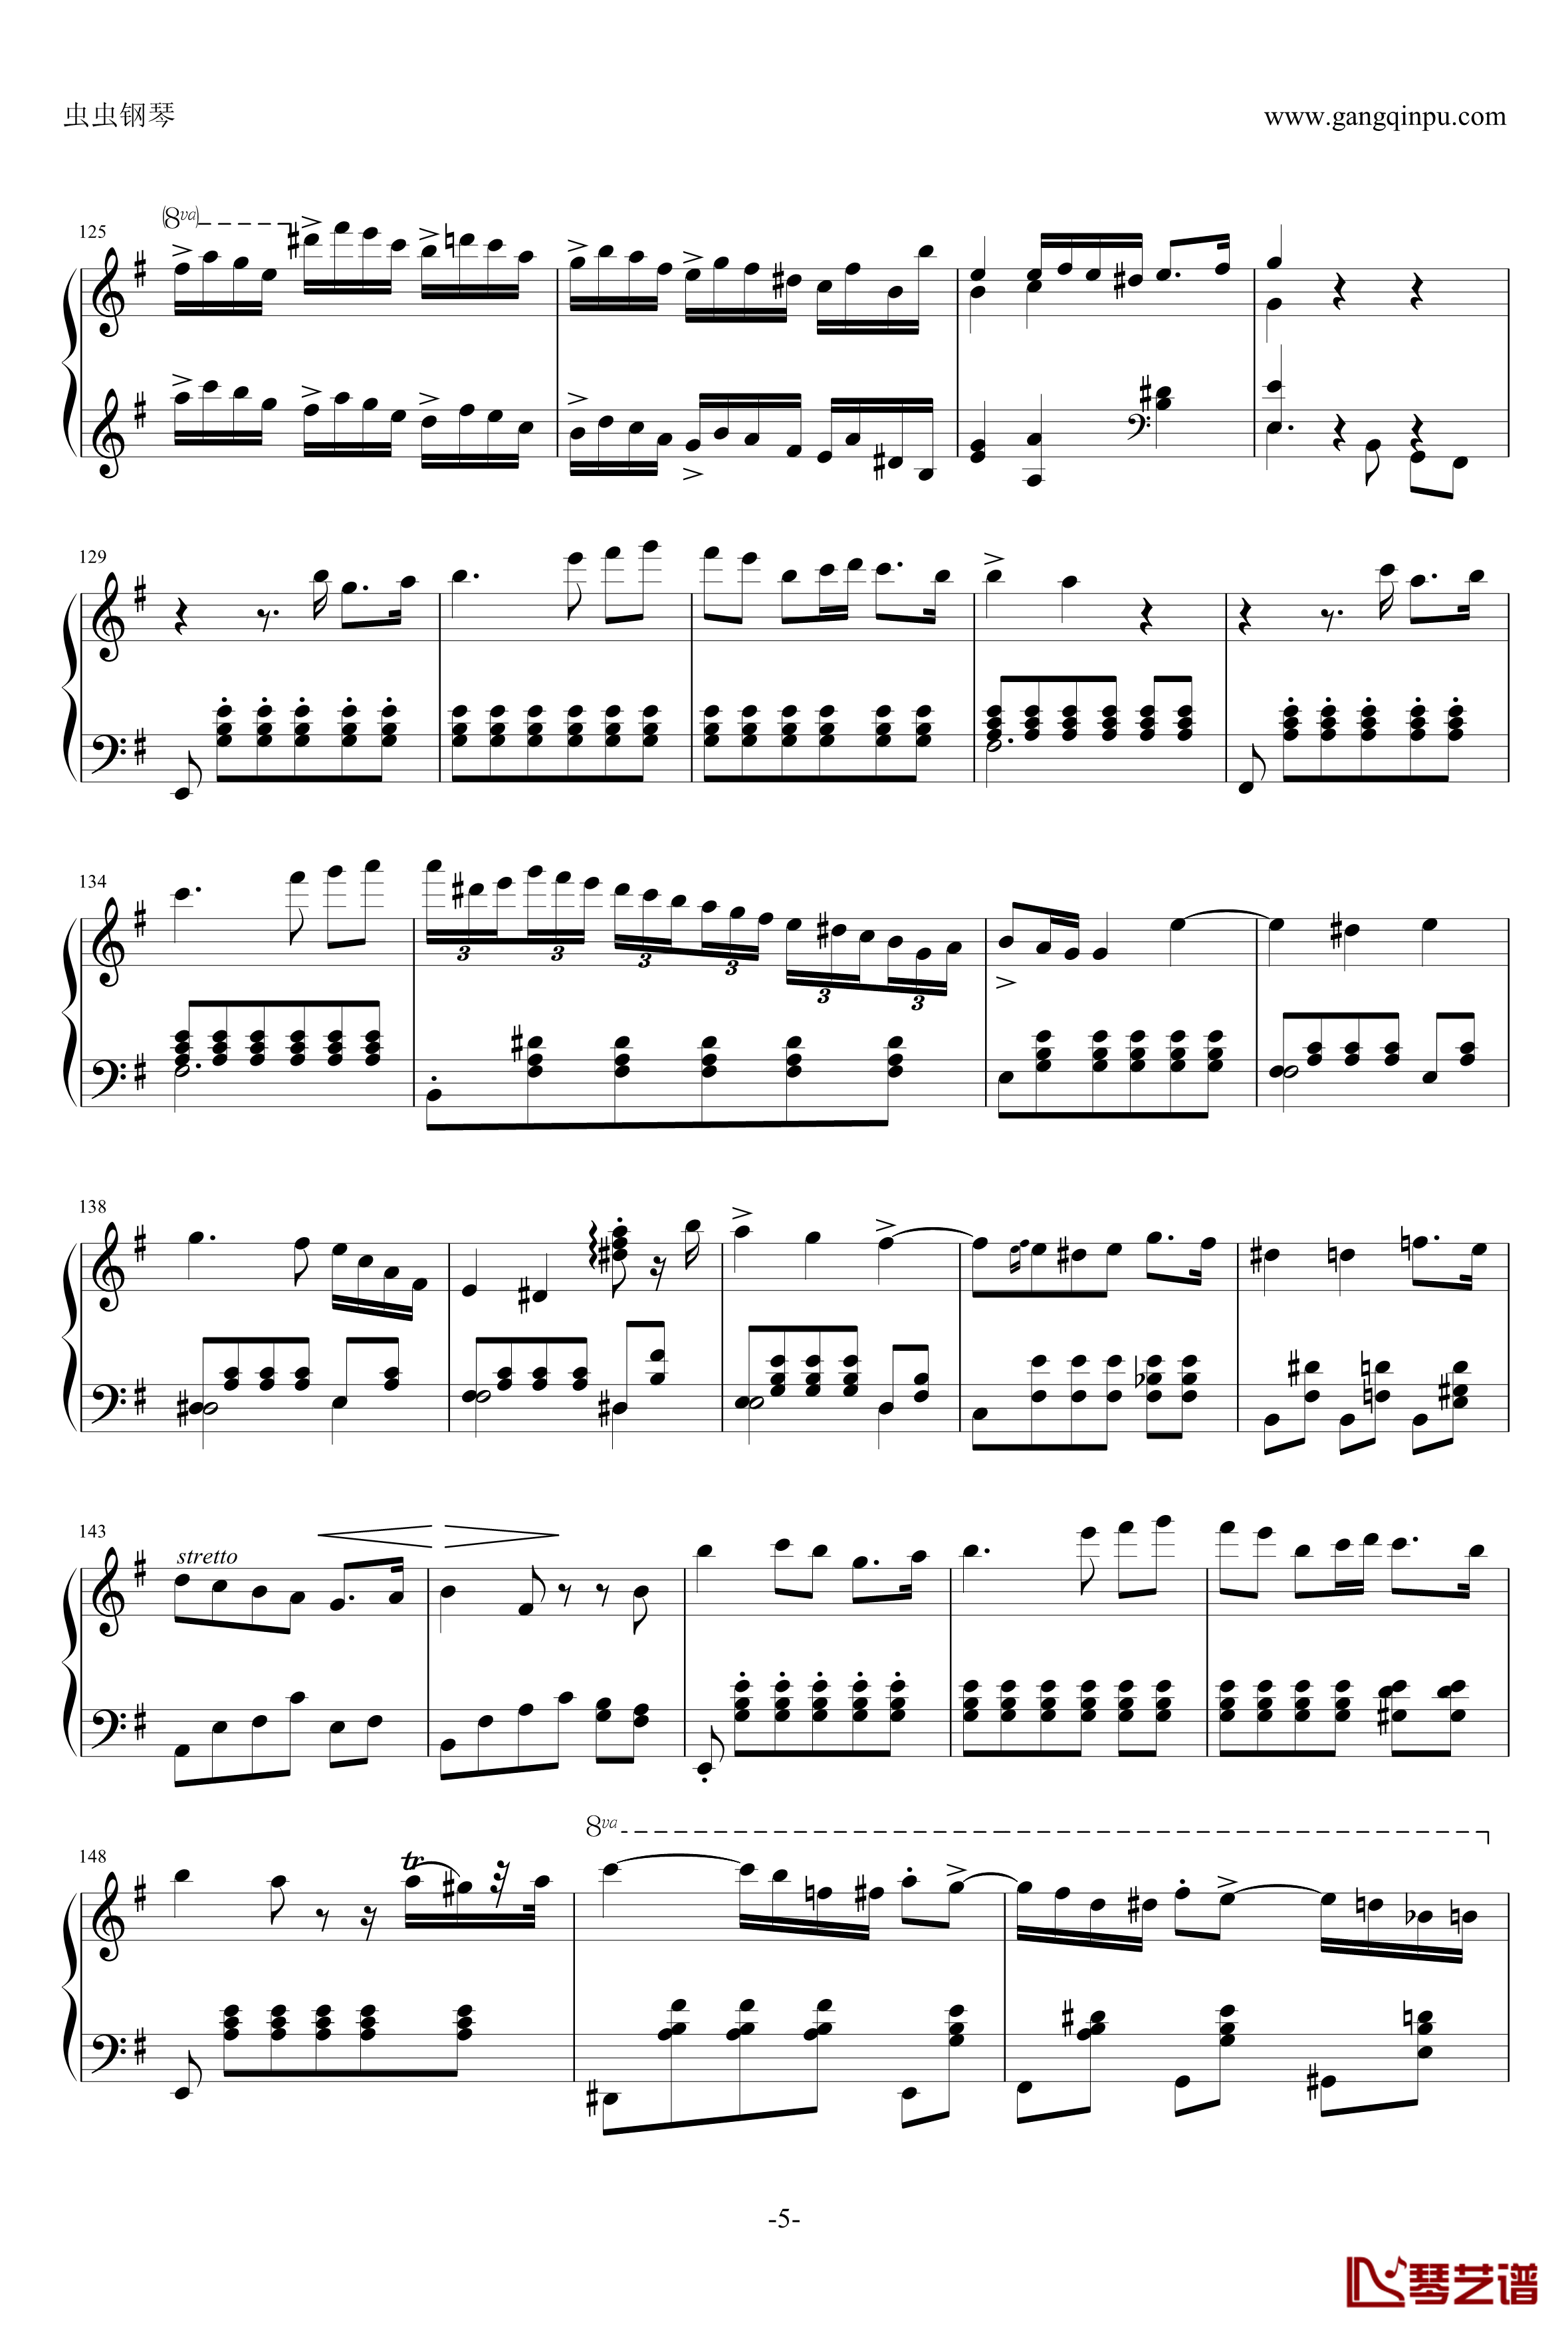 e小调钢琴协奏曲钢琴谱-乐之琴简易钢琴版-肖邦-chopin5